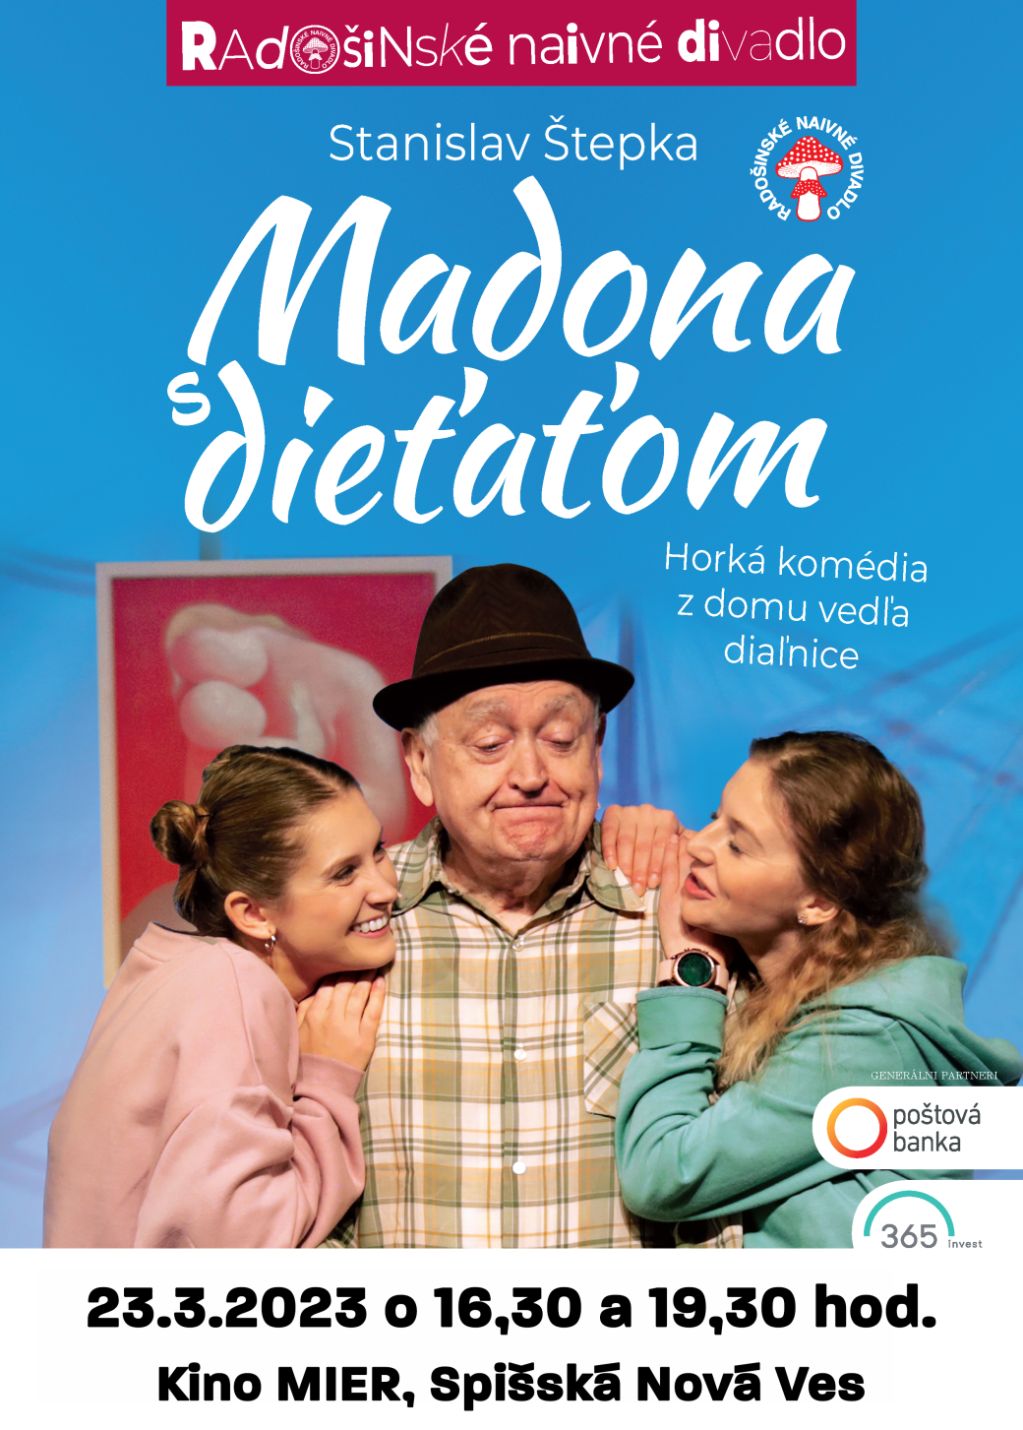 Radošinské naivné divadlo - Madona s dieťaťom | spisskanovaves.eu